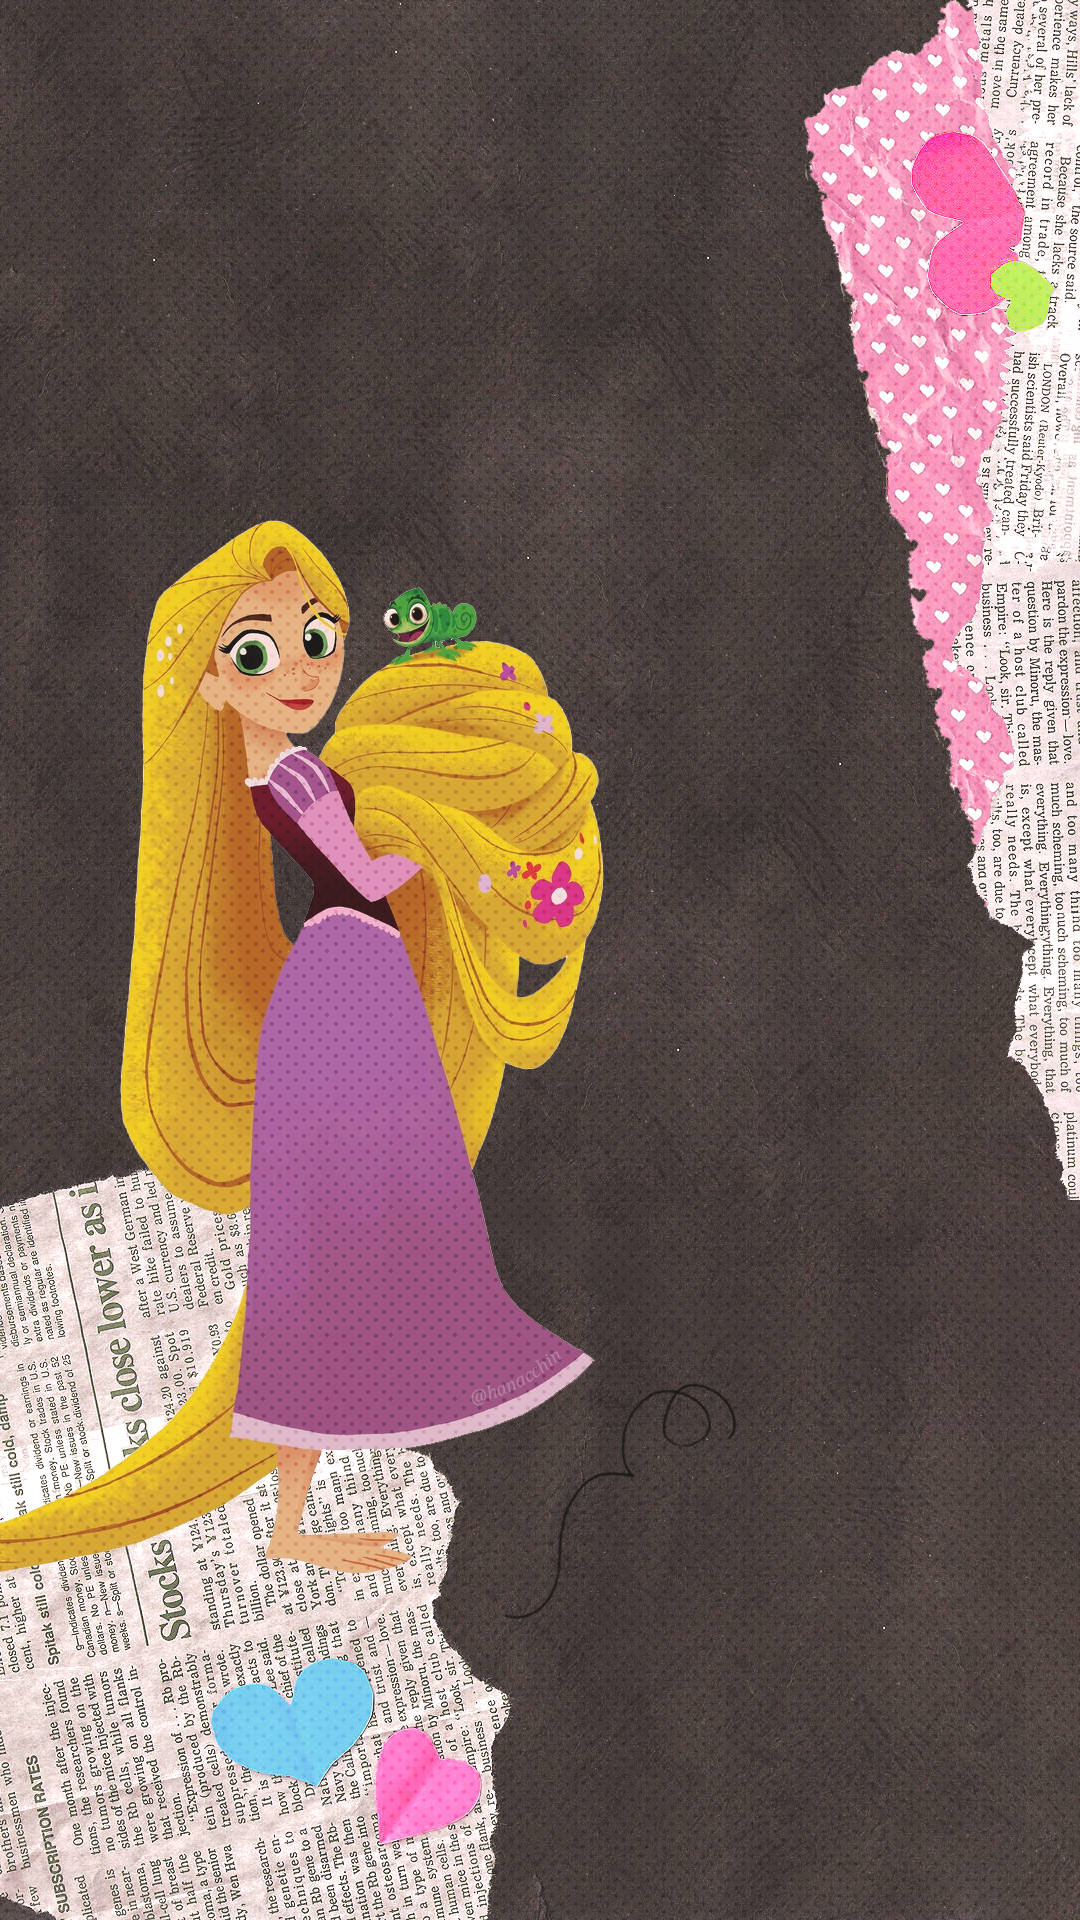 A Whimsical Scene From Disney's Rapunzel Wallpaper